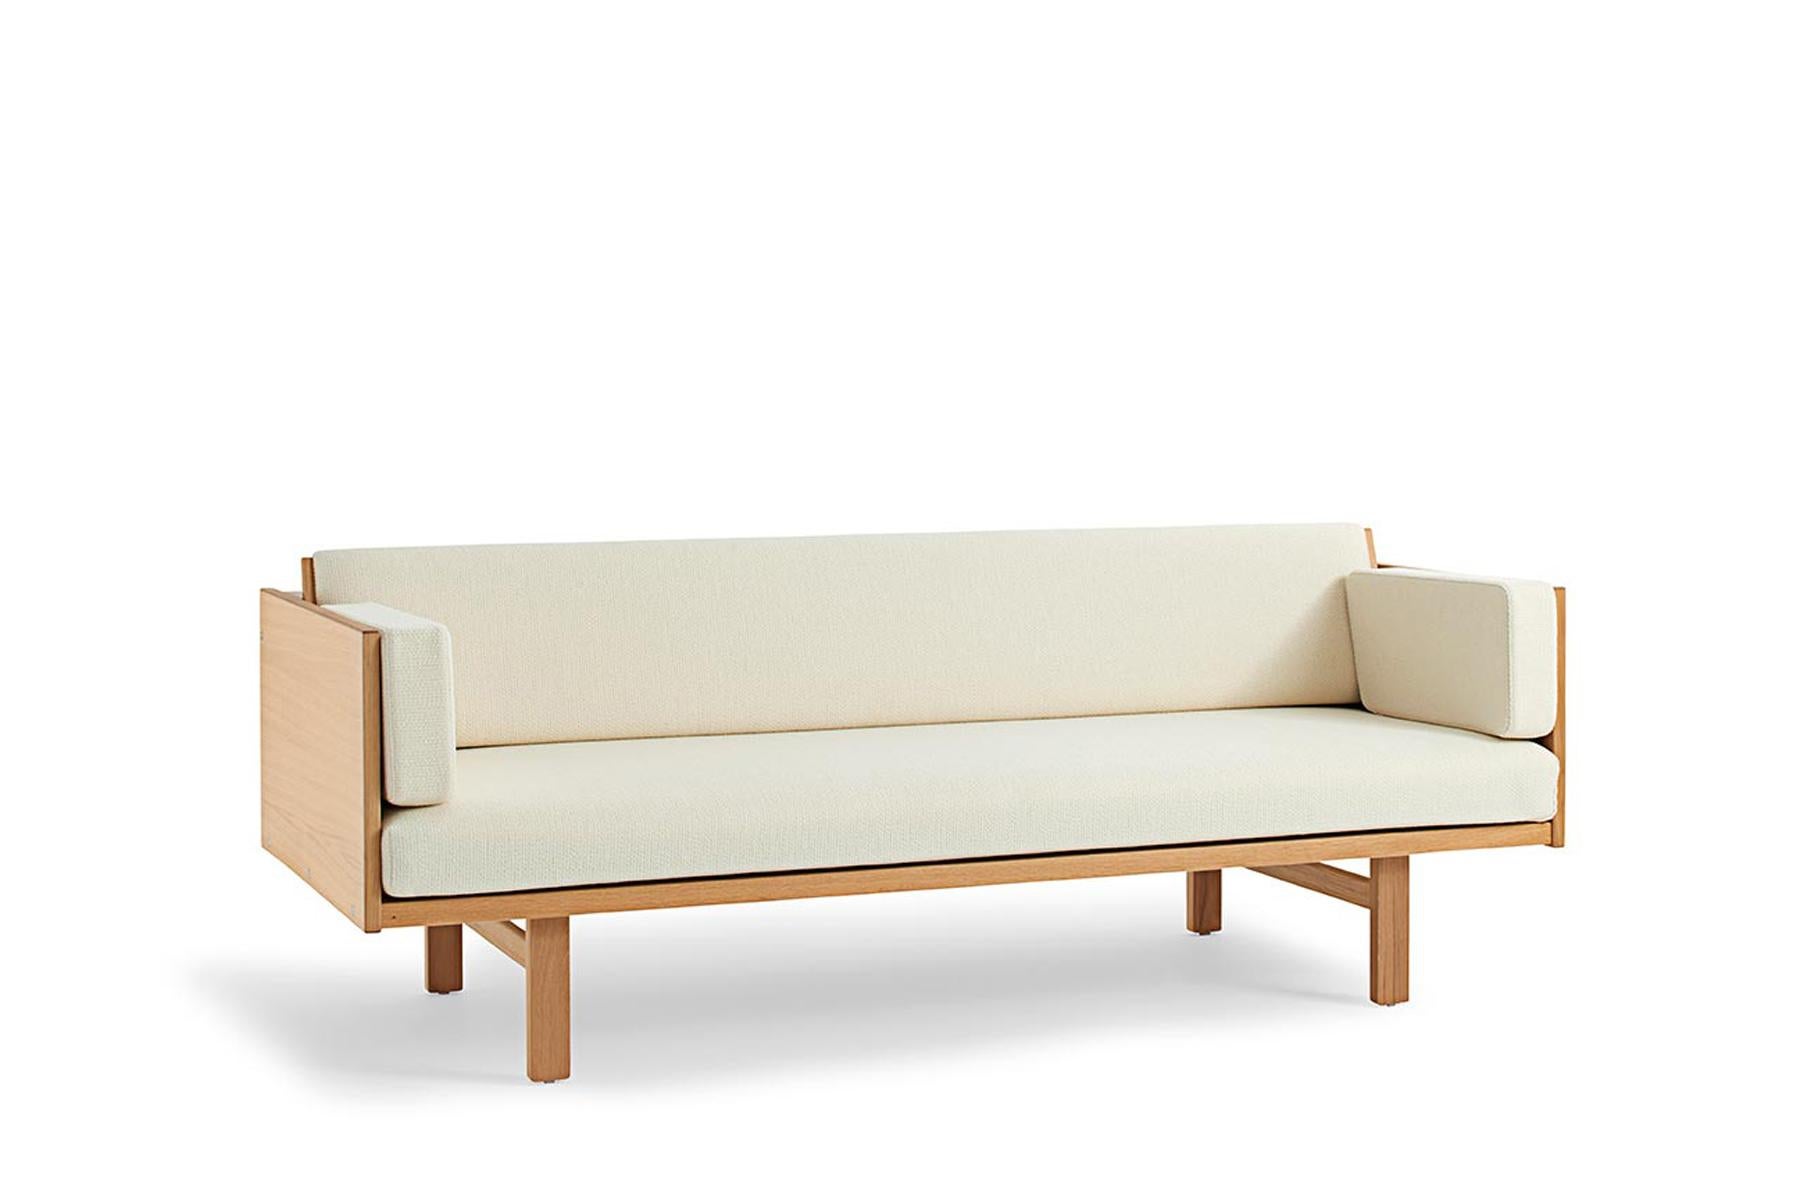 Das 1954 von Hans Wegner entworfene Daybed GE 259 ist ein vielseitiges Möbelstück. Die gepolsterte Rückenlehne lässt sich anheben, um ein geräumiges Bett zu erhalten. Diese Bank aus Massivholz wird in der Getama-Fabrik in Gedsted, Dänemark, von